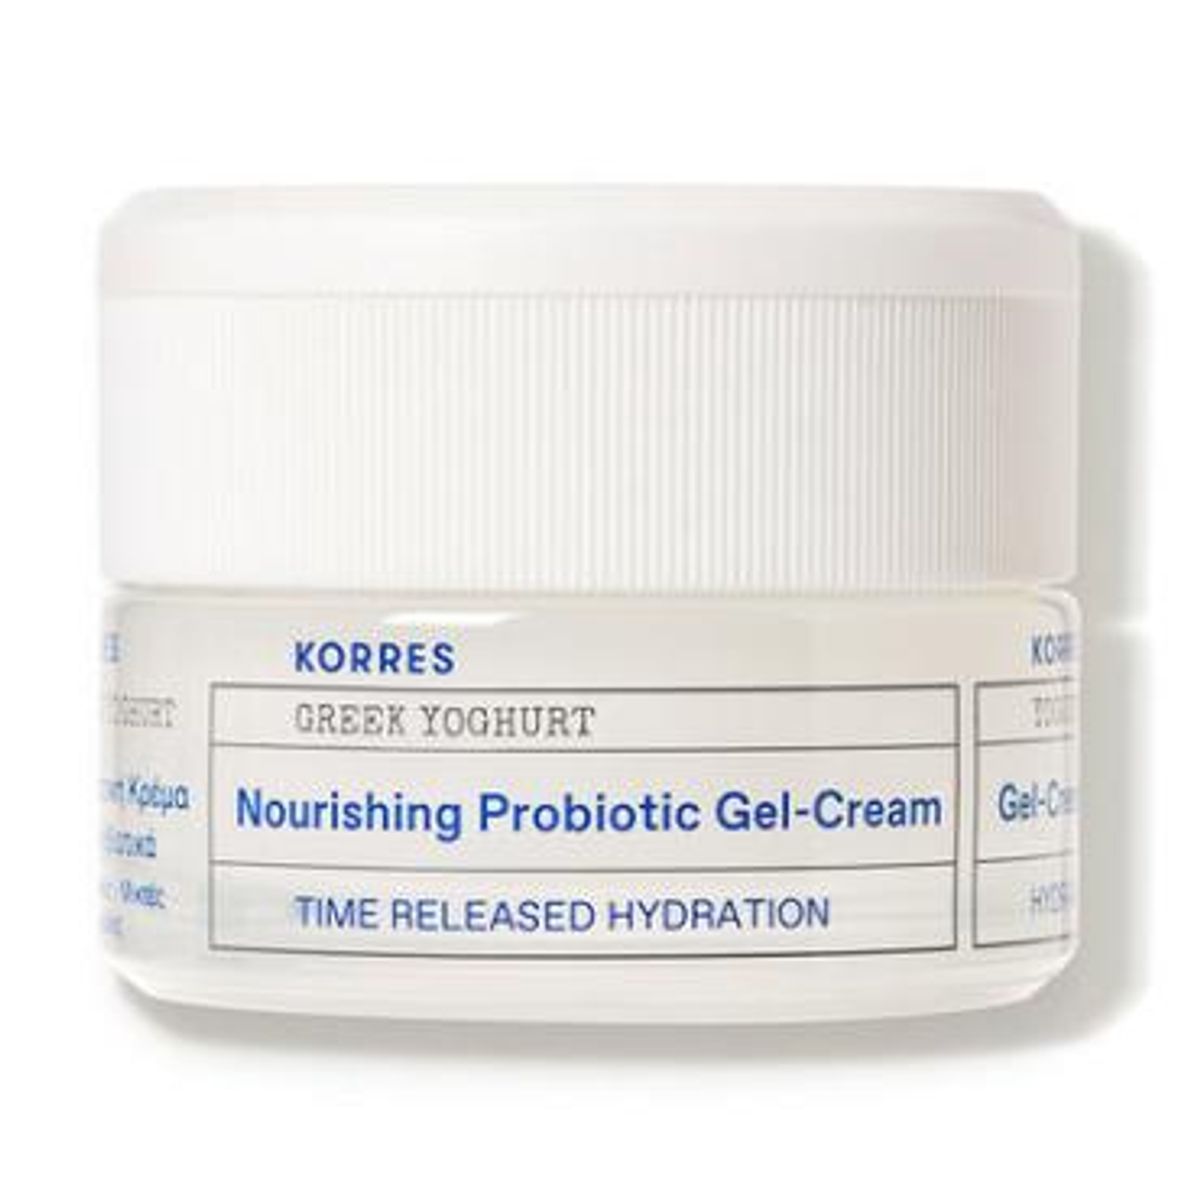 korres greek yoghurt nourishing probiotic gel cream